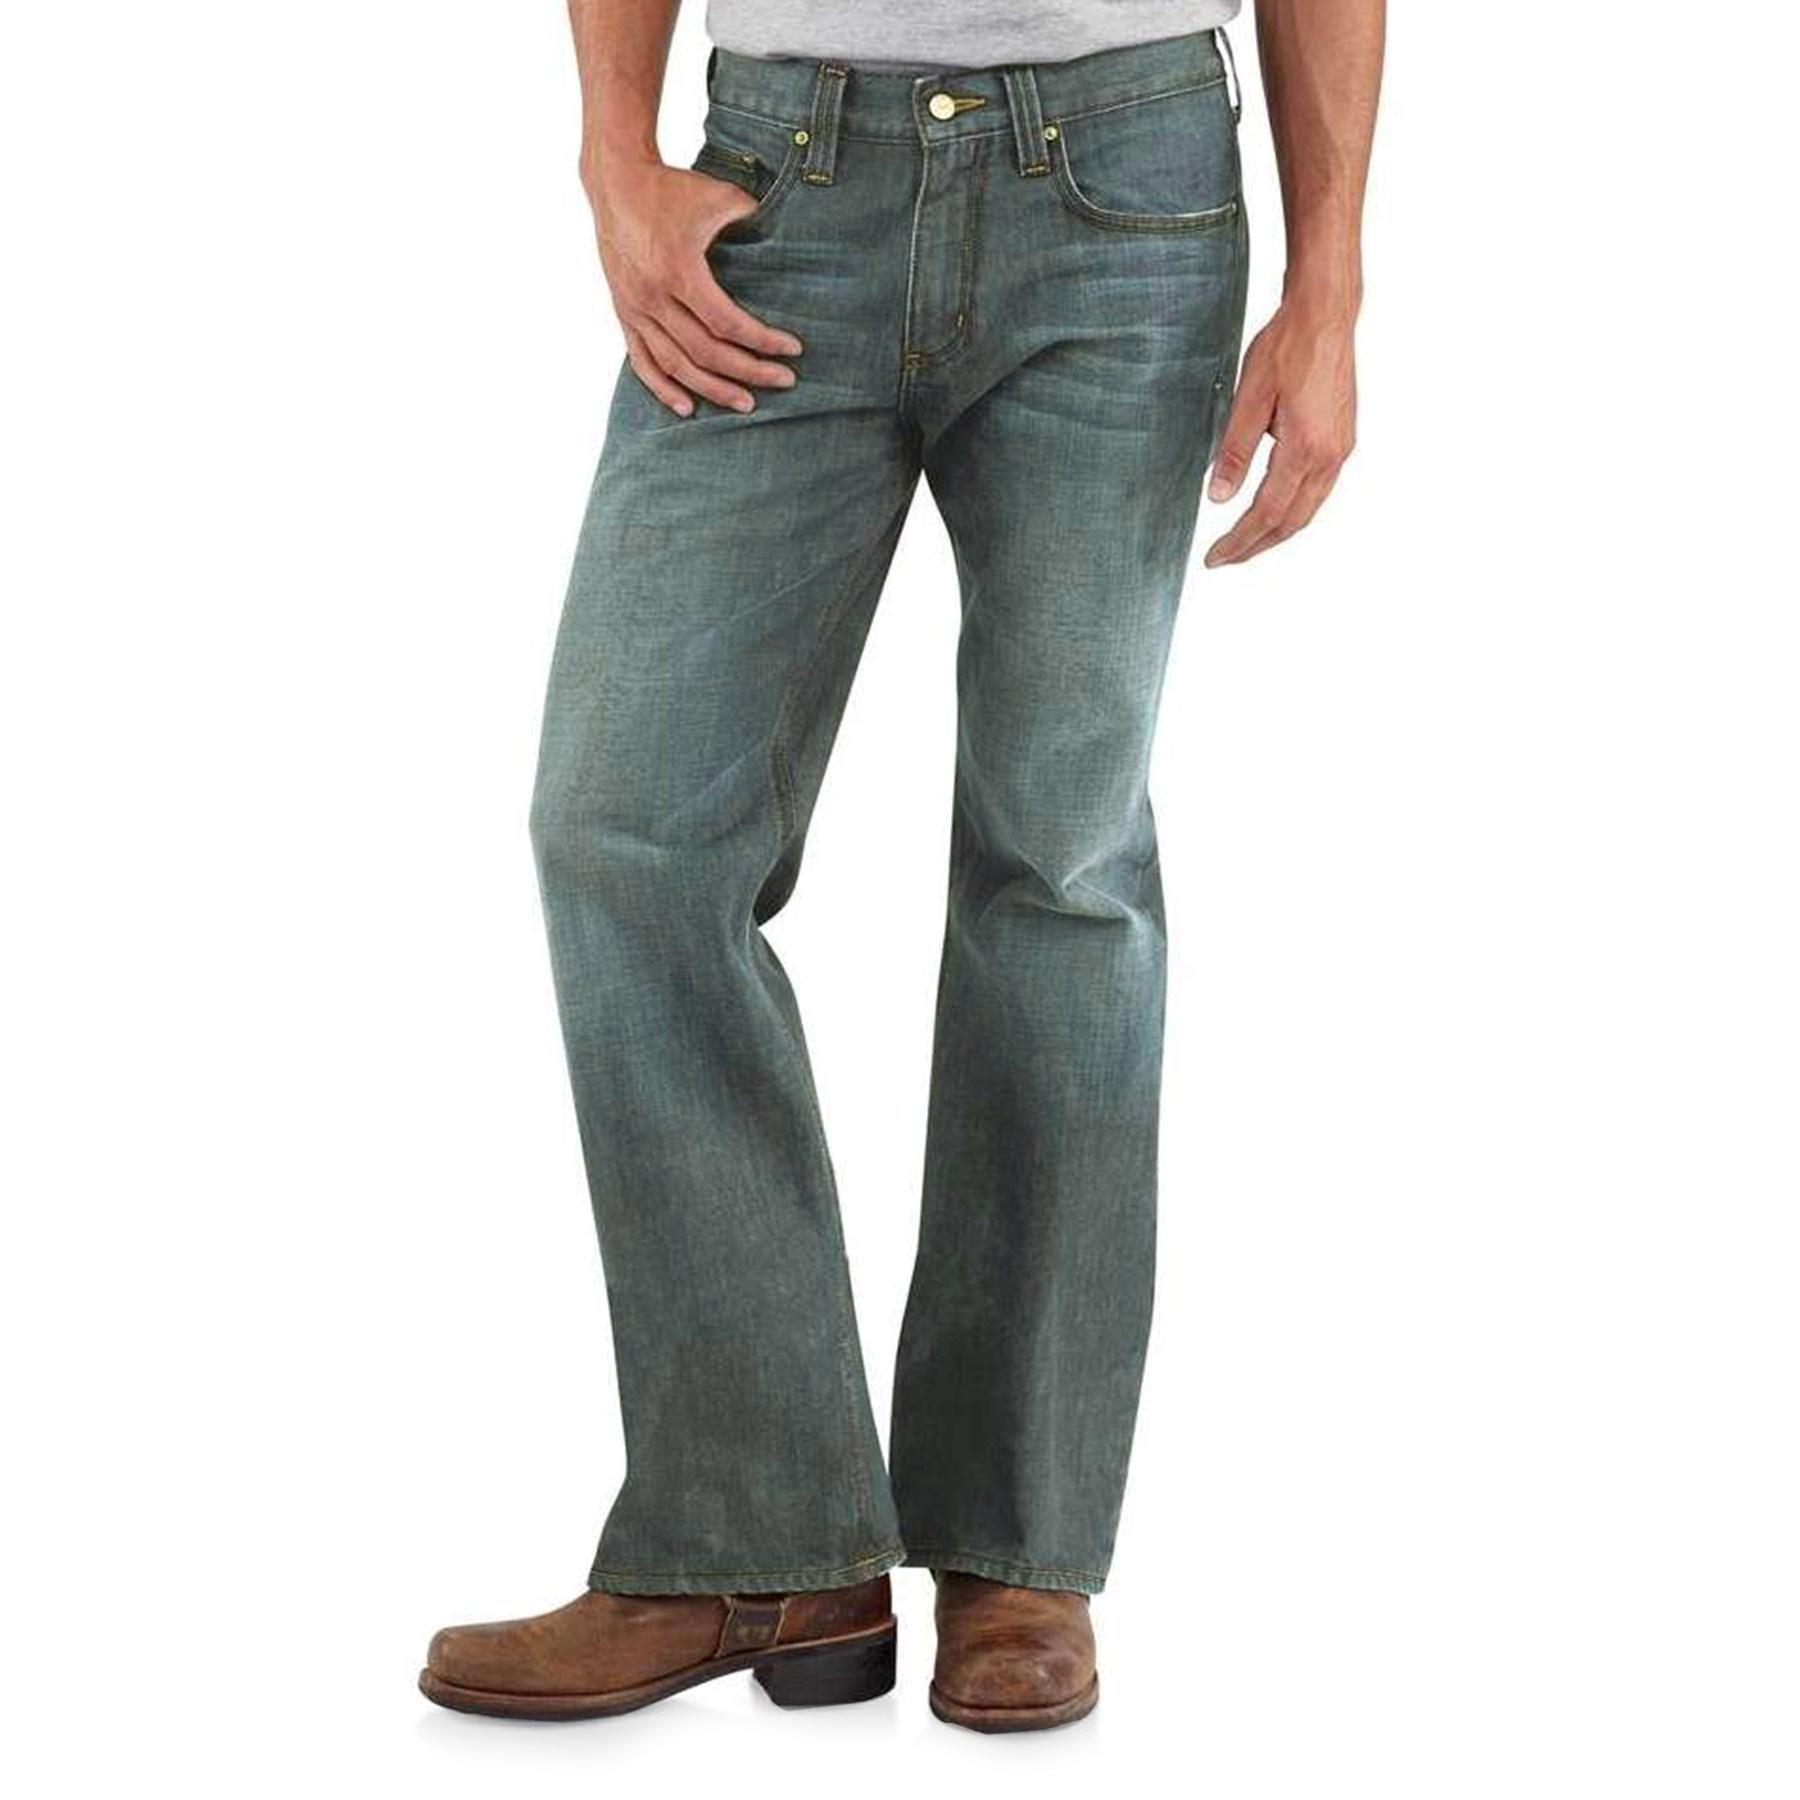 carhartt jeans bootcut